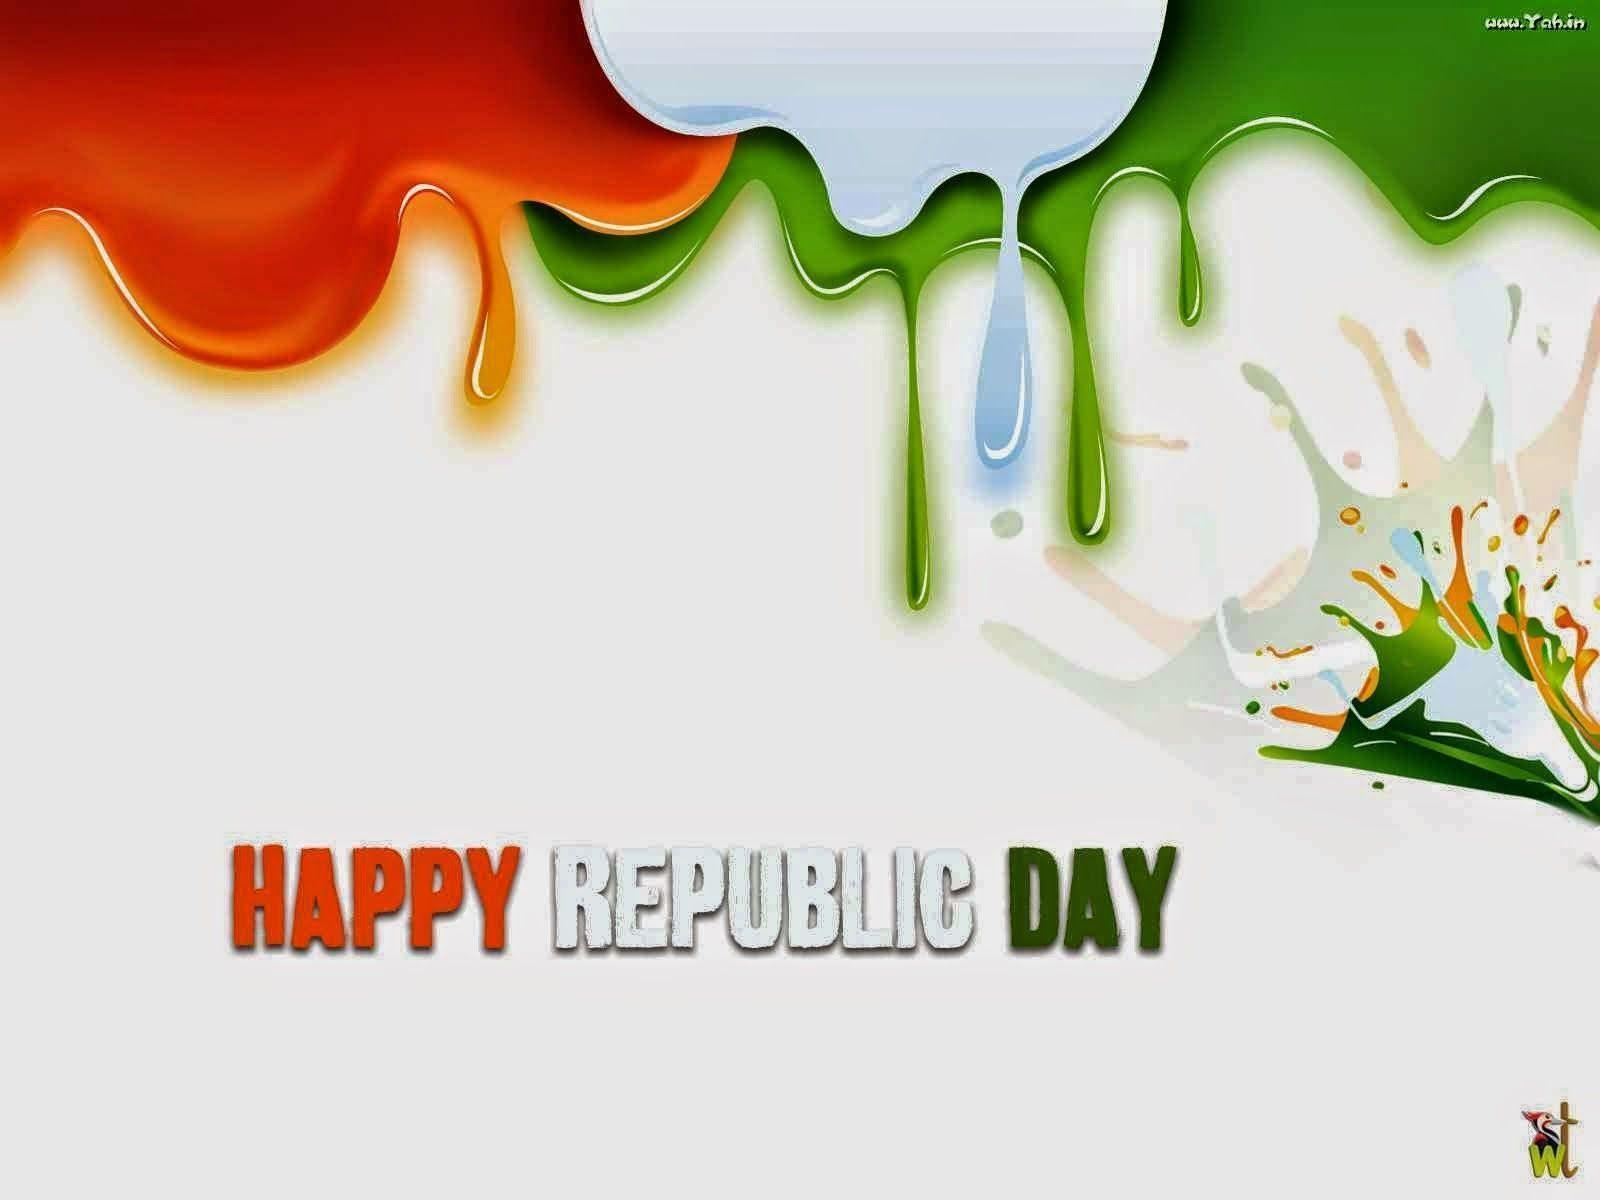 Republic Day 2015 Whatsapp Status